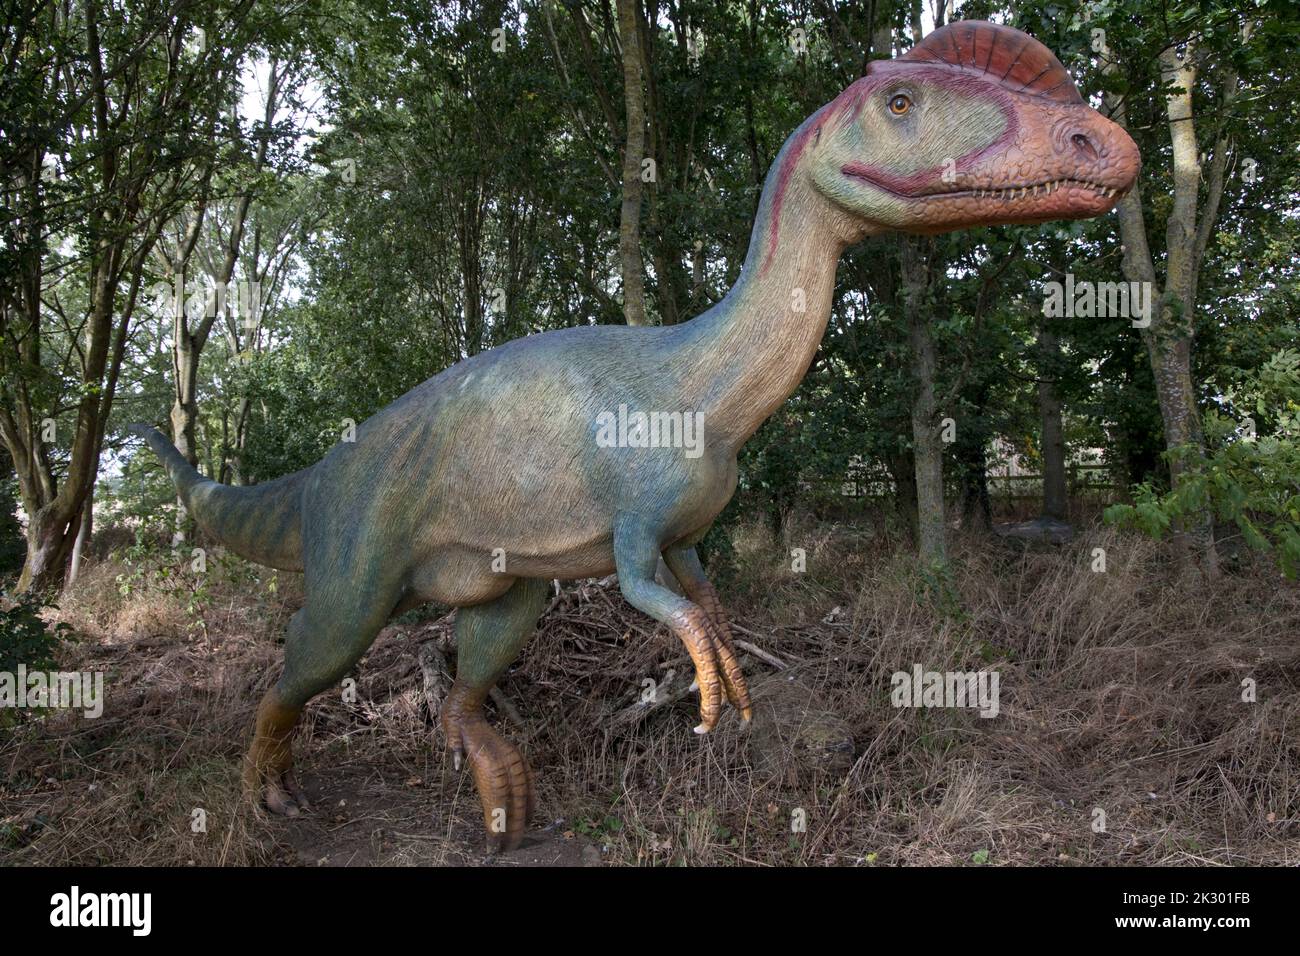 Das lebensgroße Modell des Dilophosaurus mit zwei knöchernen Kämmen auf dem Kopf war ein sich schnell bewegender, fleischfressender Dinosaurier des frühen Jurassic at All Things Wild, Hone Stockfoto